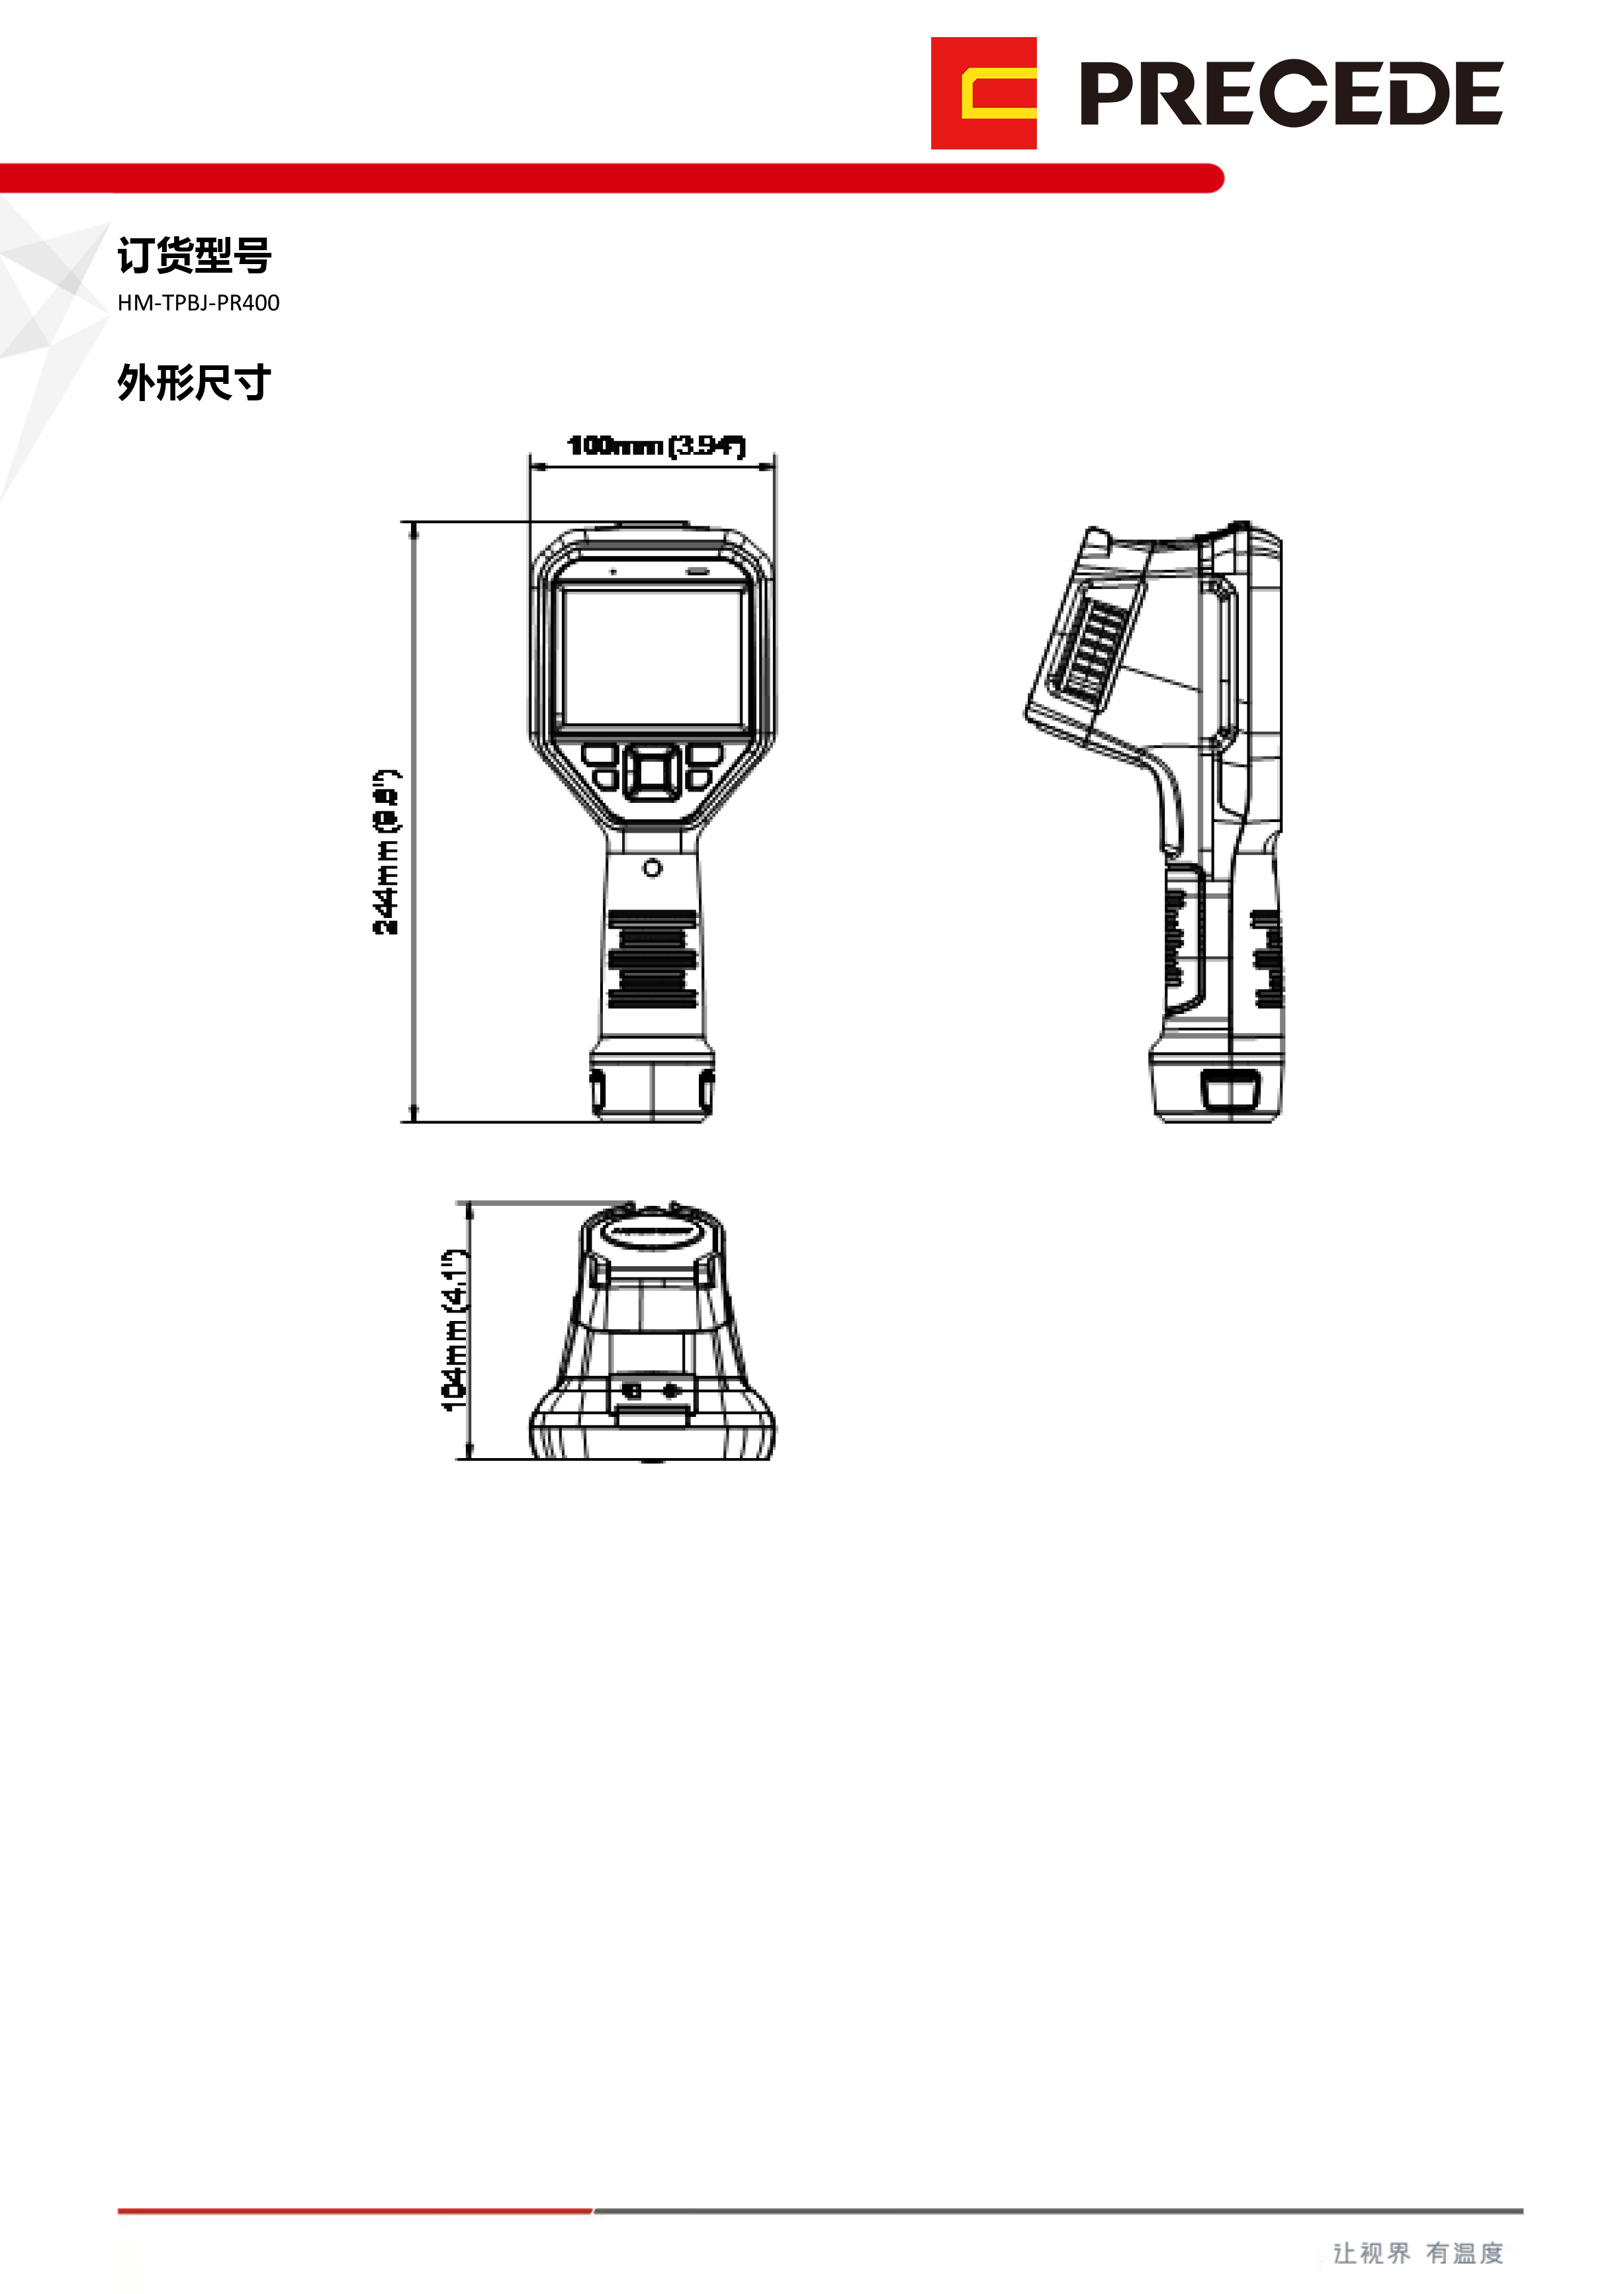 海康微影HM-TPBJ-PR400(图3)